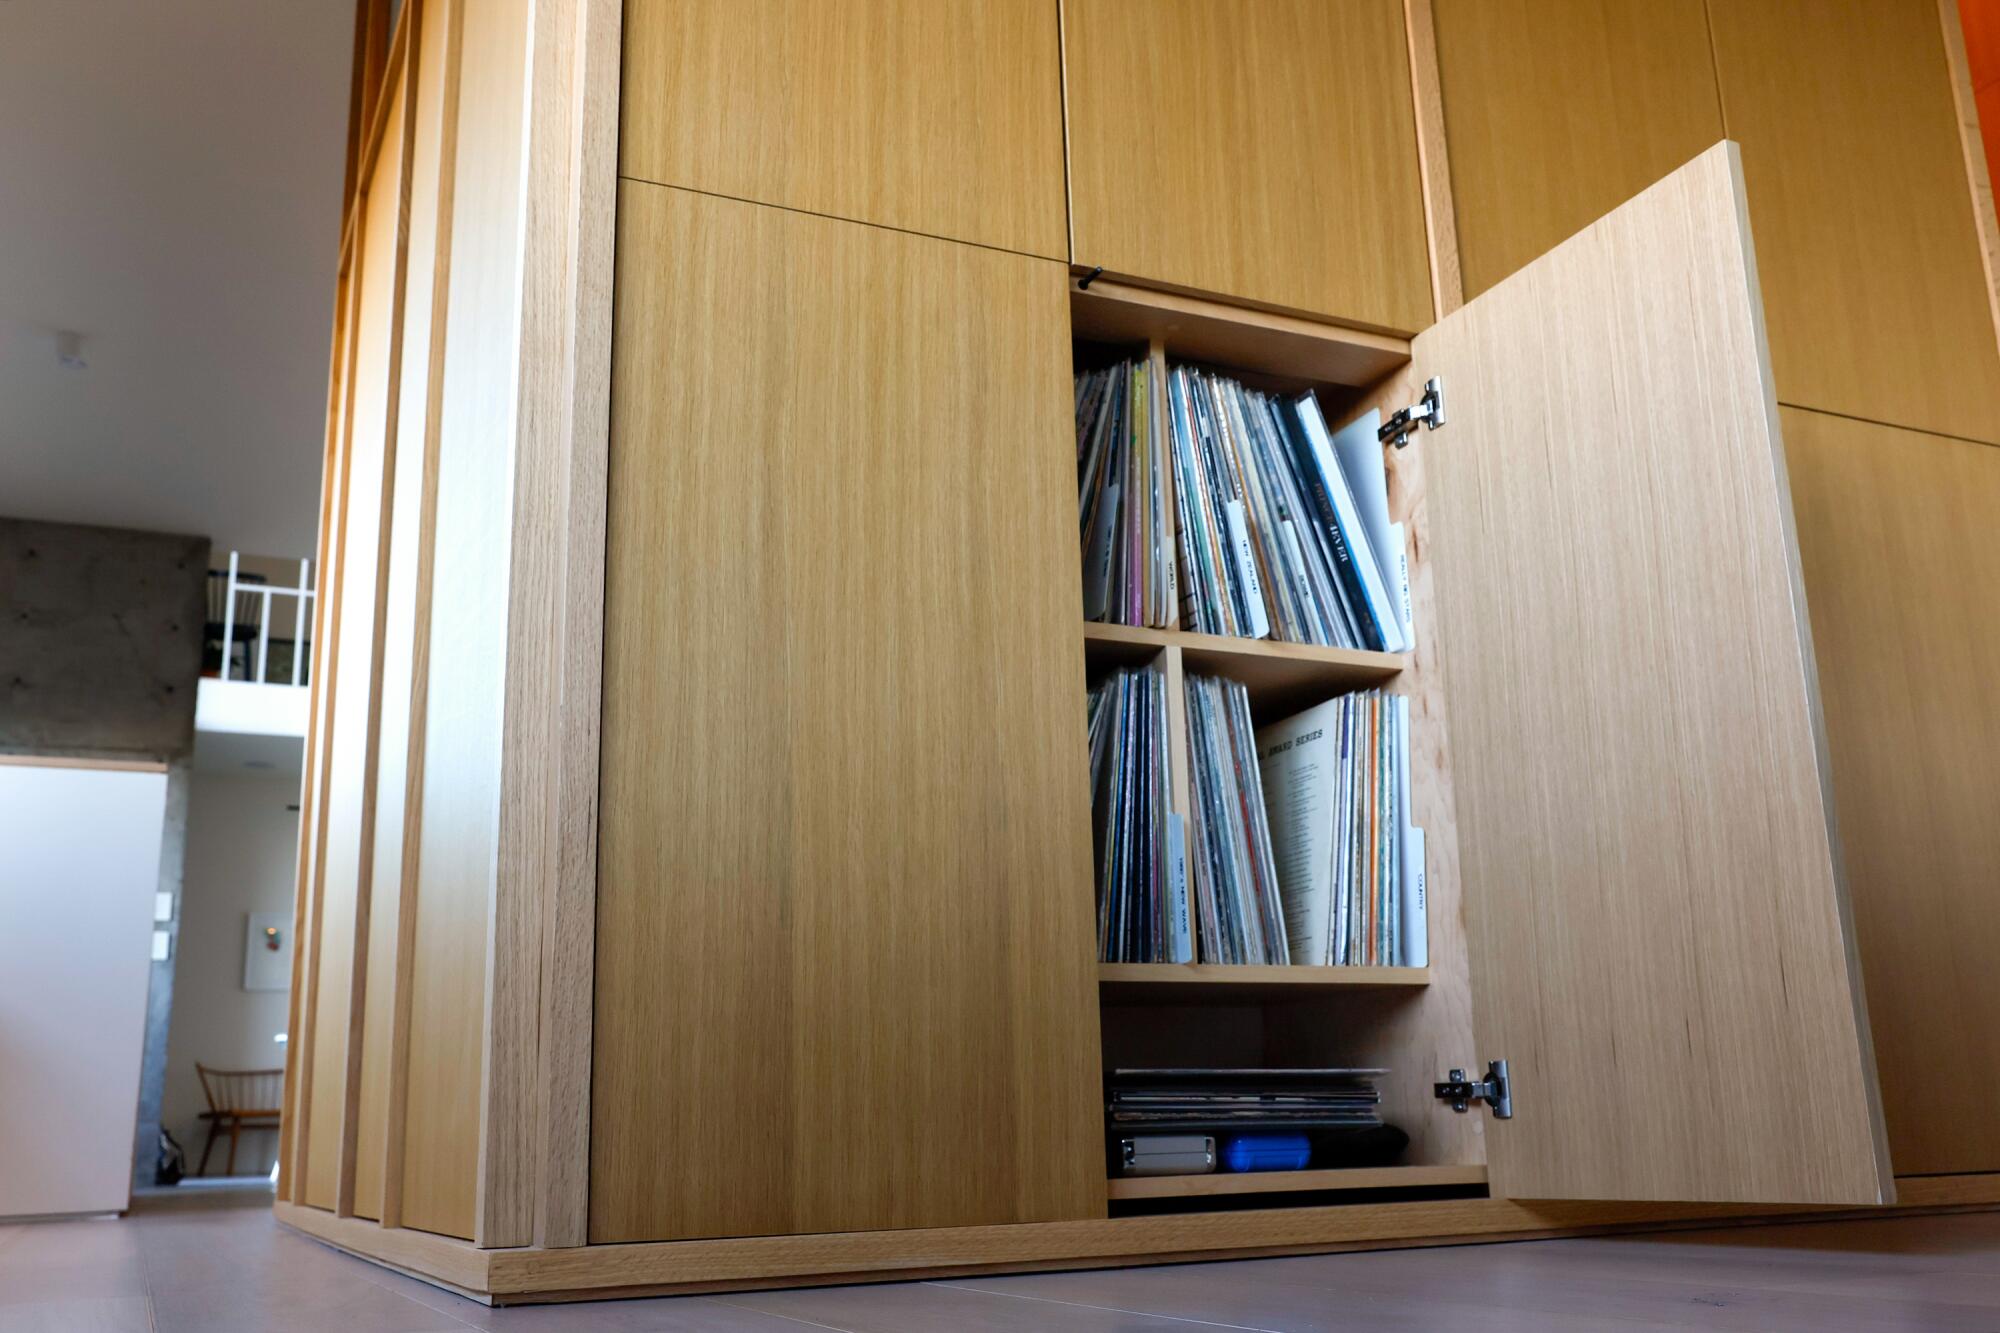 Les disques sont cachés derrière des armoires en bois clair qui semblent cachées dans les murs.